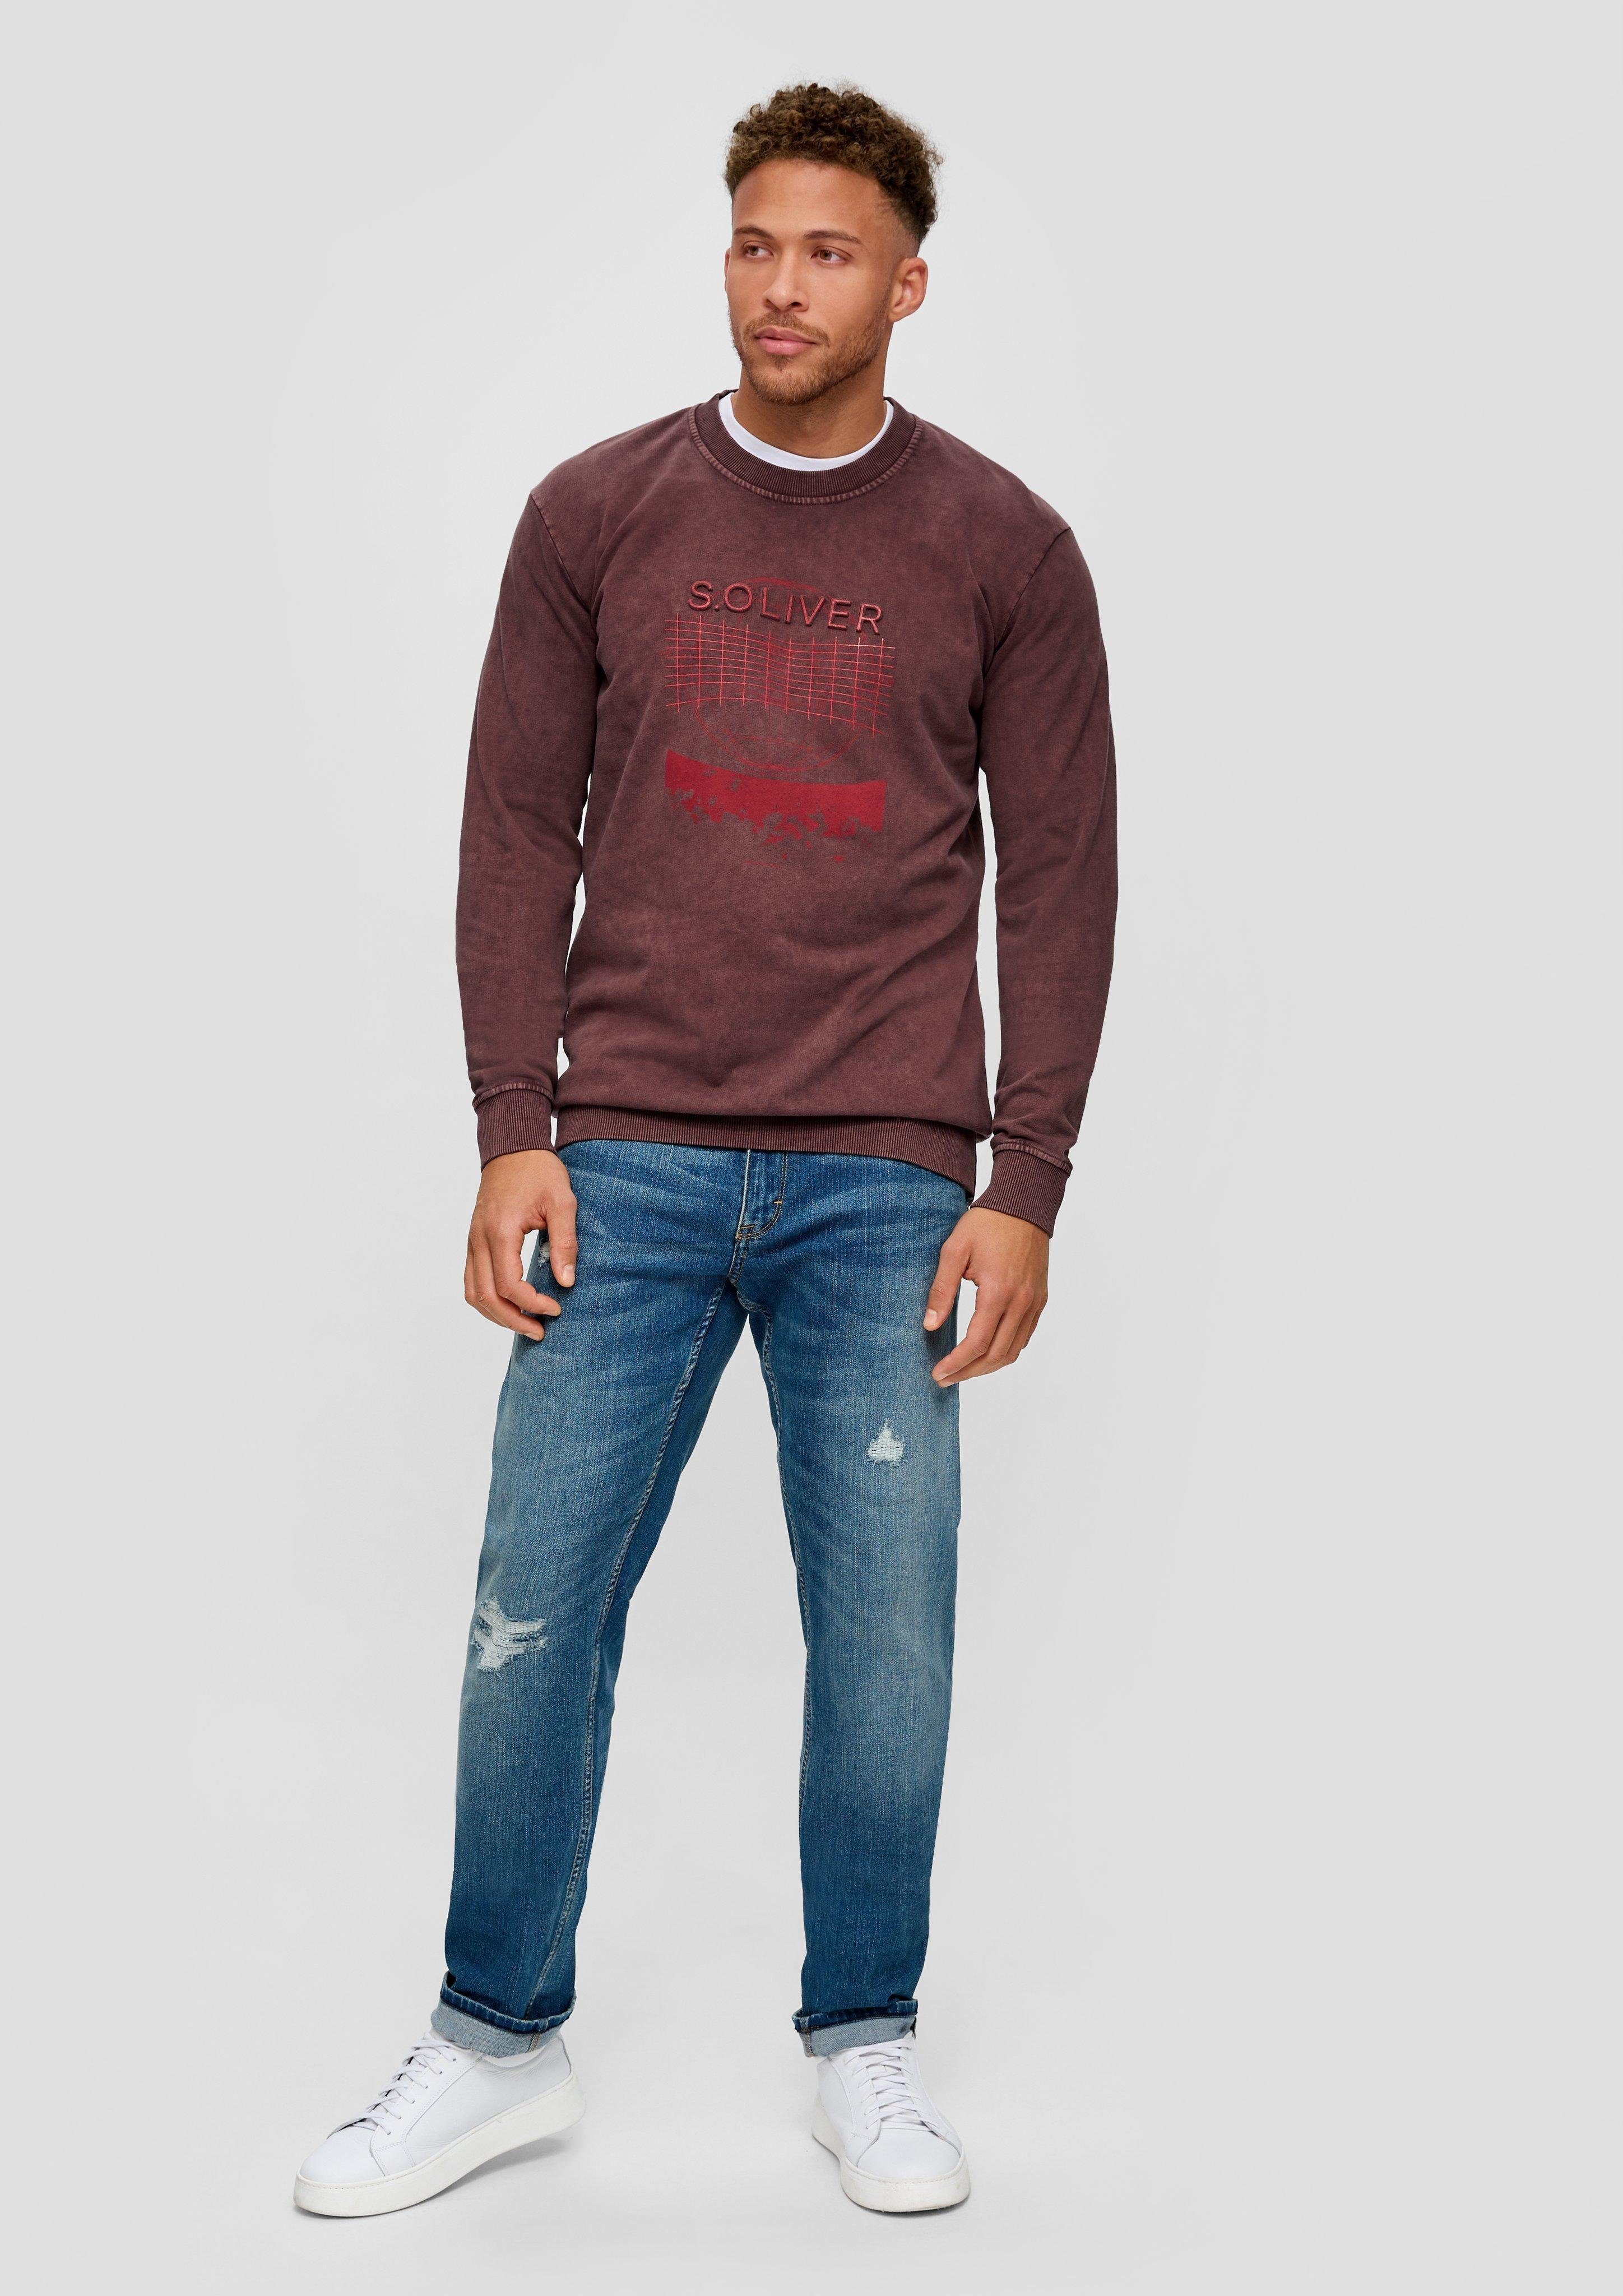 s.Oliver Sweatshirt Sweatshirt mit Front-Print, lange Rippbündchen, Ärmel mit hat Ärmel